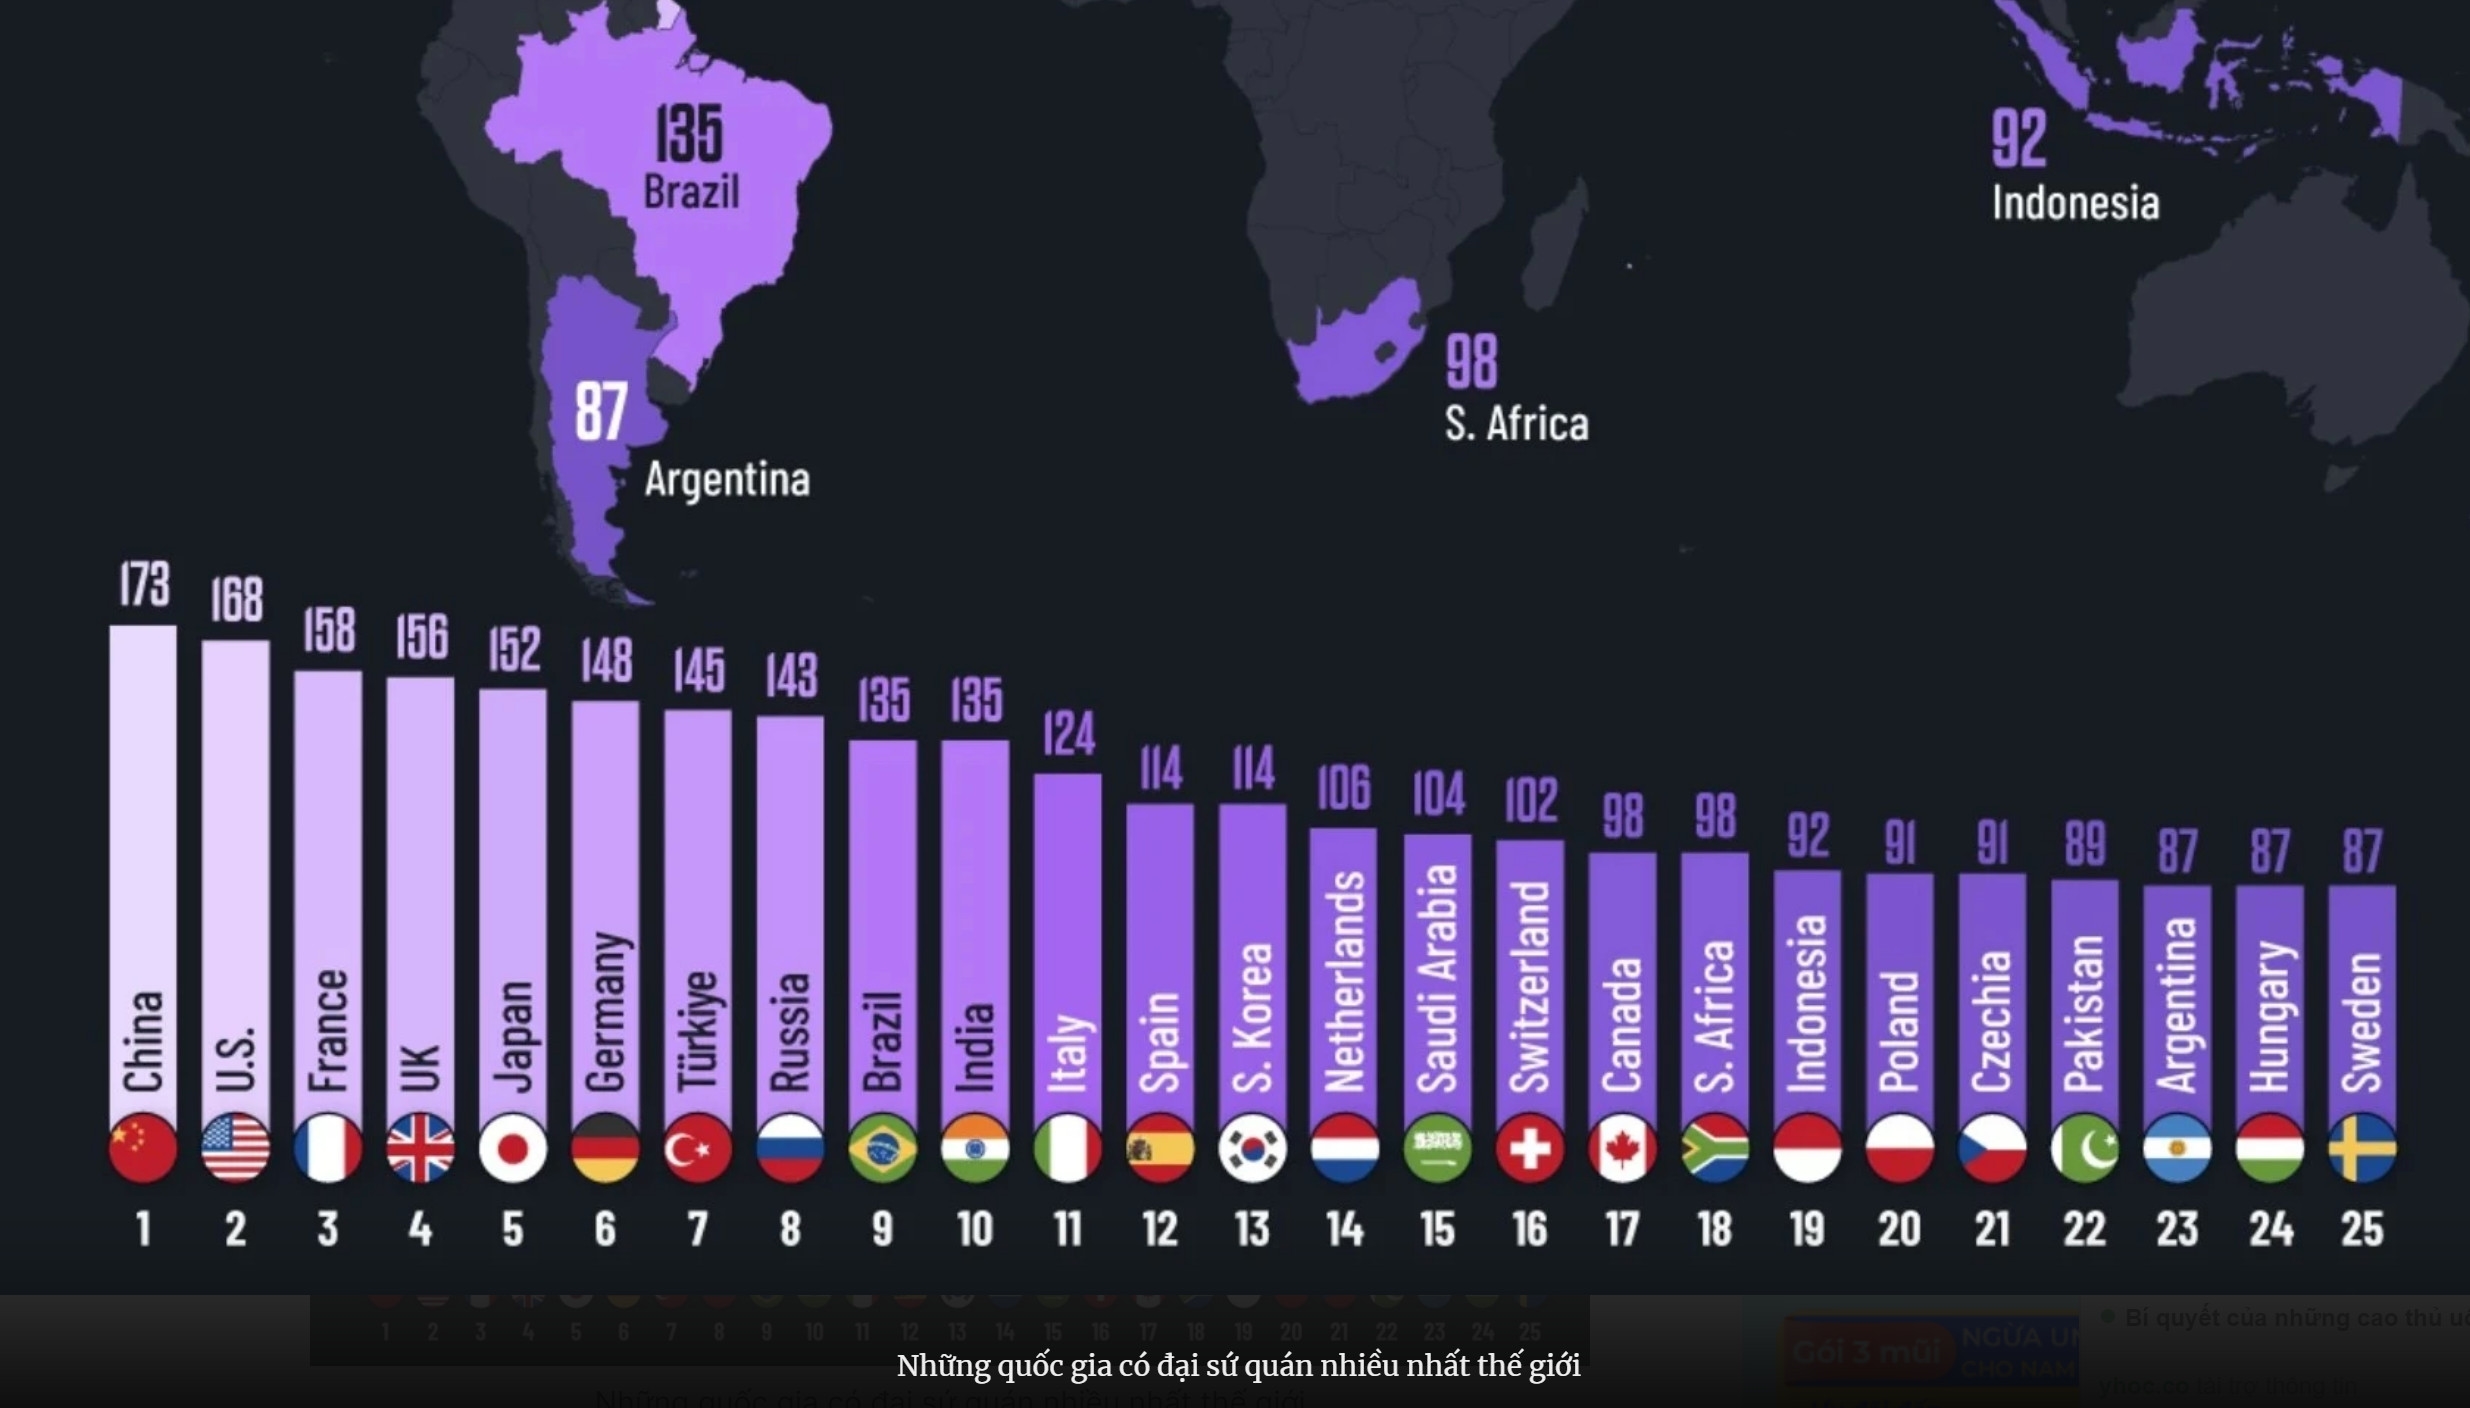 Quốc gia nào có nhiều Đại Sứ Quán nhất trên thế giới?